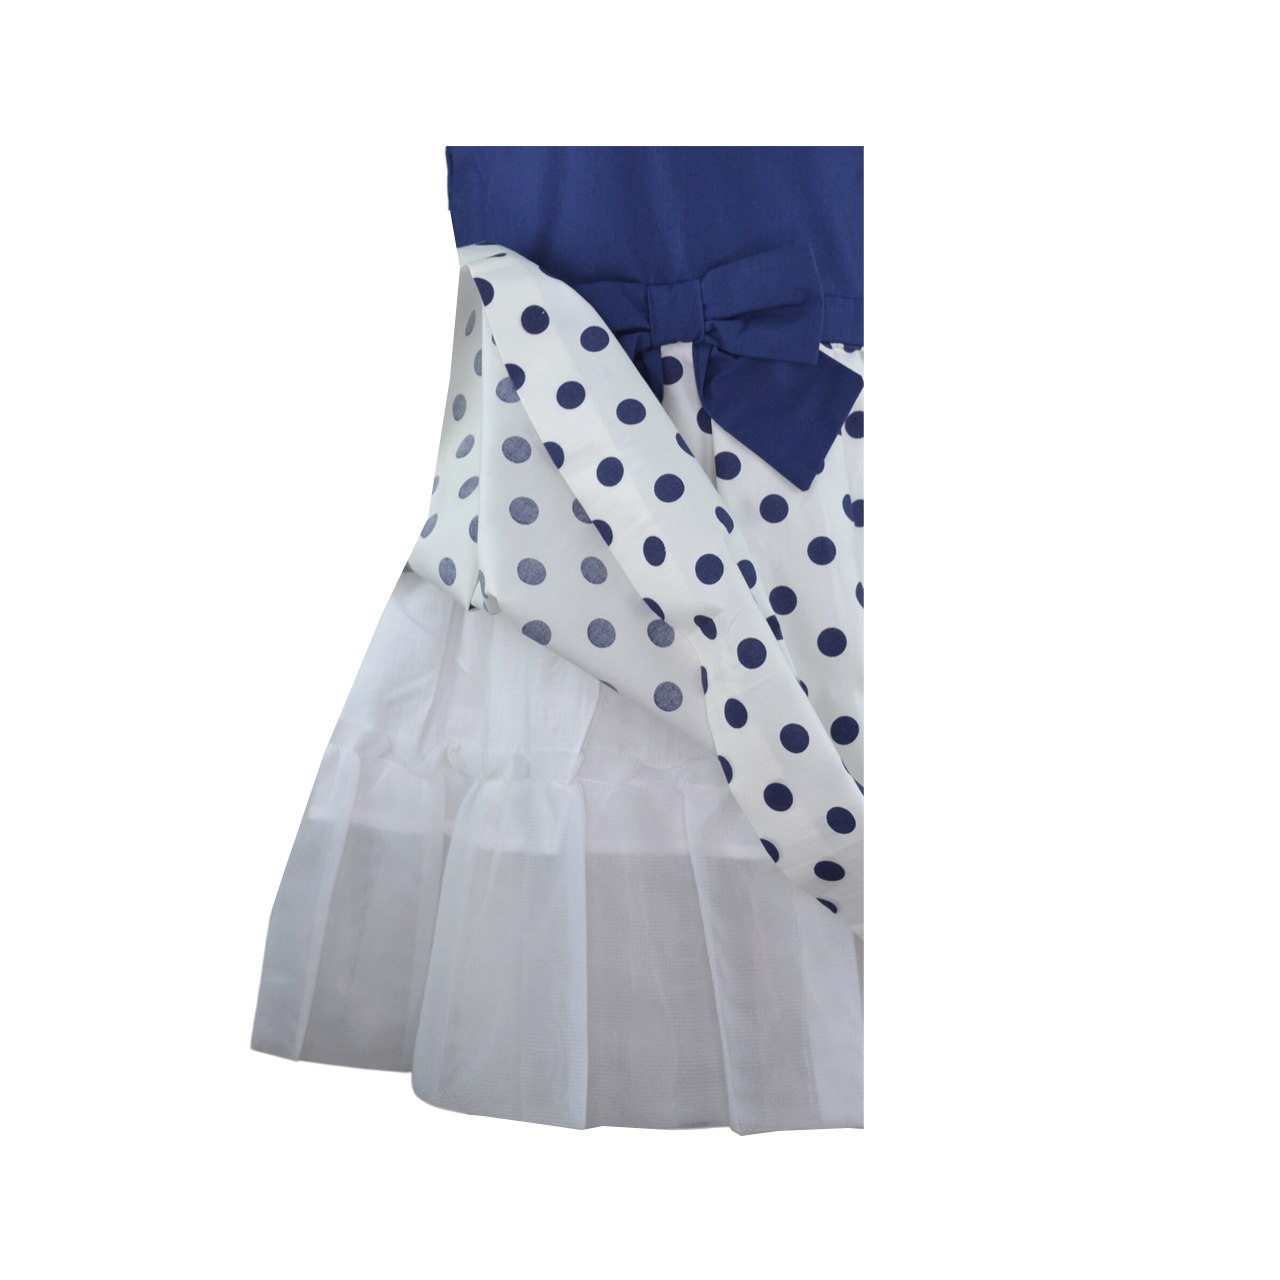 Alice Sleeveless Dress with Navy Polka Dots Print